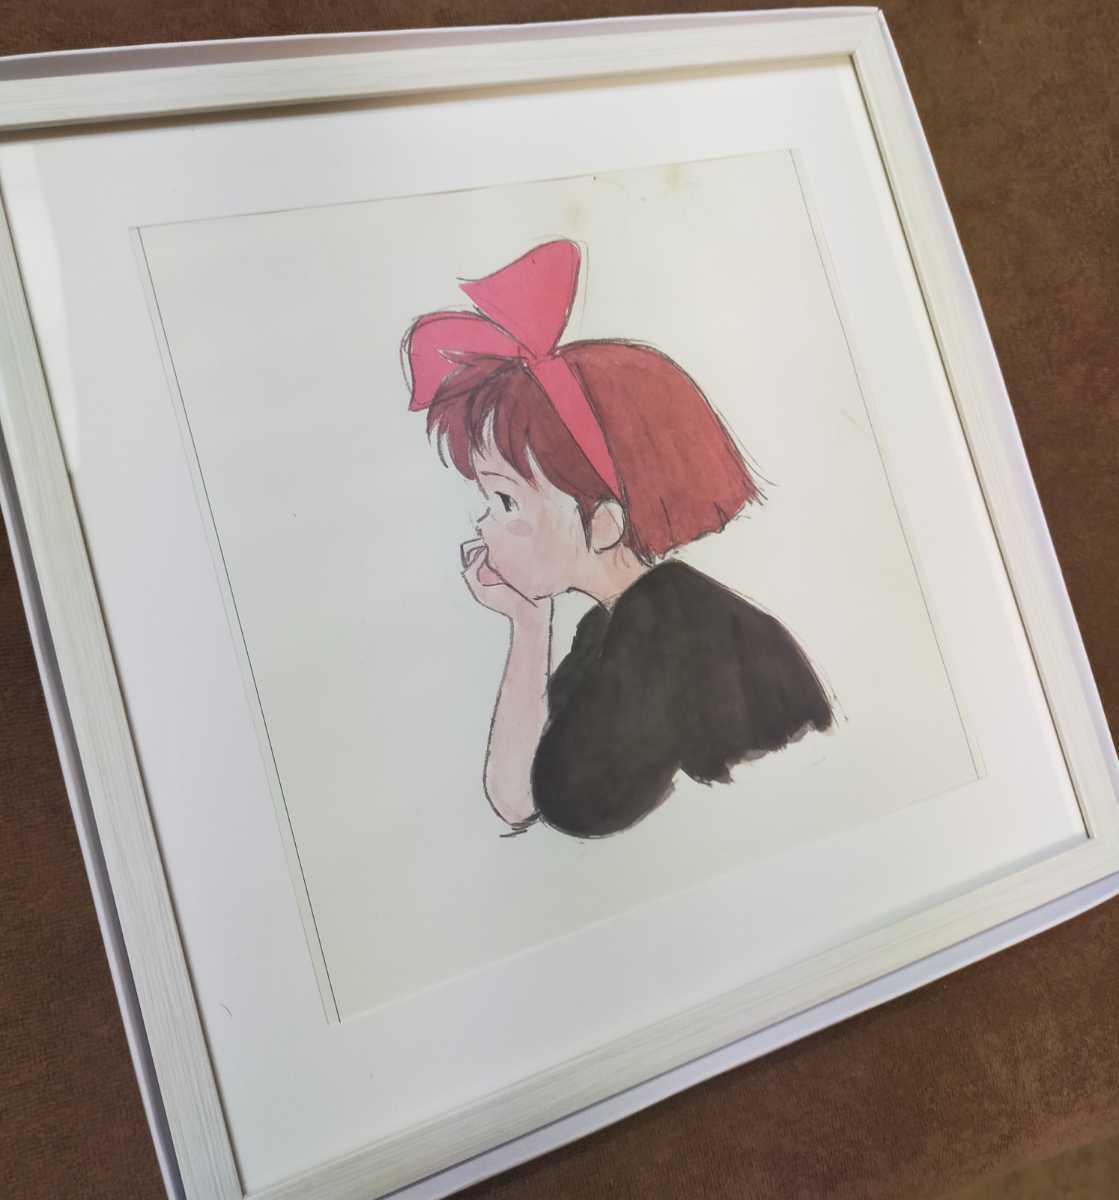 Extra Large [Limité 1] Service de livraison du Studio Ghibli Kiki [Article encadré] Il y a plus de 30 ans Calendrier Ghibli Kiki Ken) Reproduction de peinture Ghibli Art original. Carte postale. Hayao Miyazaki, Ma ligne, Le service de livraison de Kiki, autres